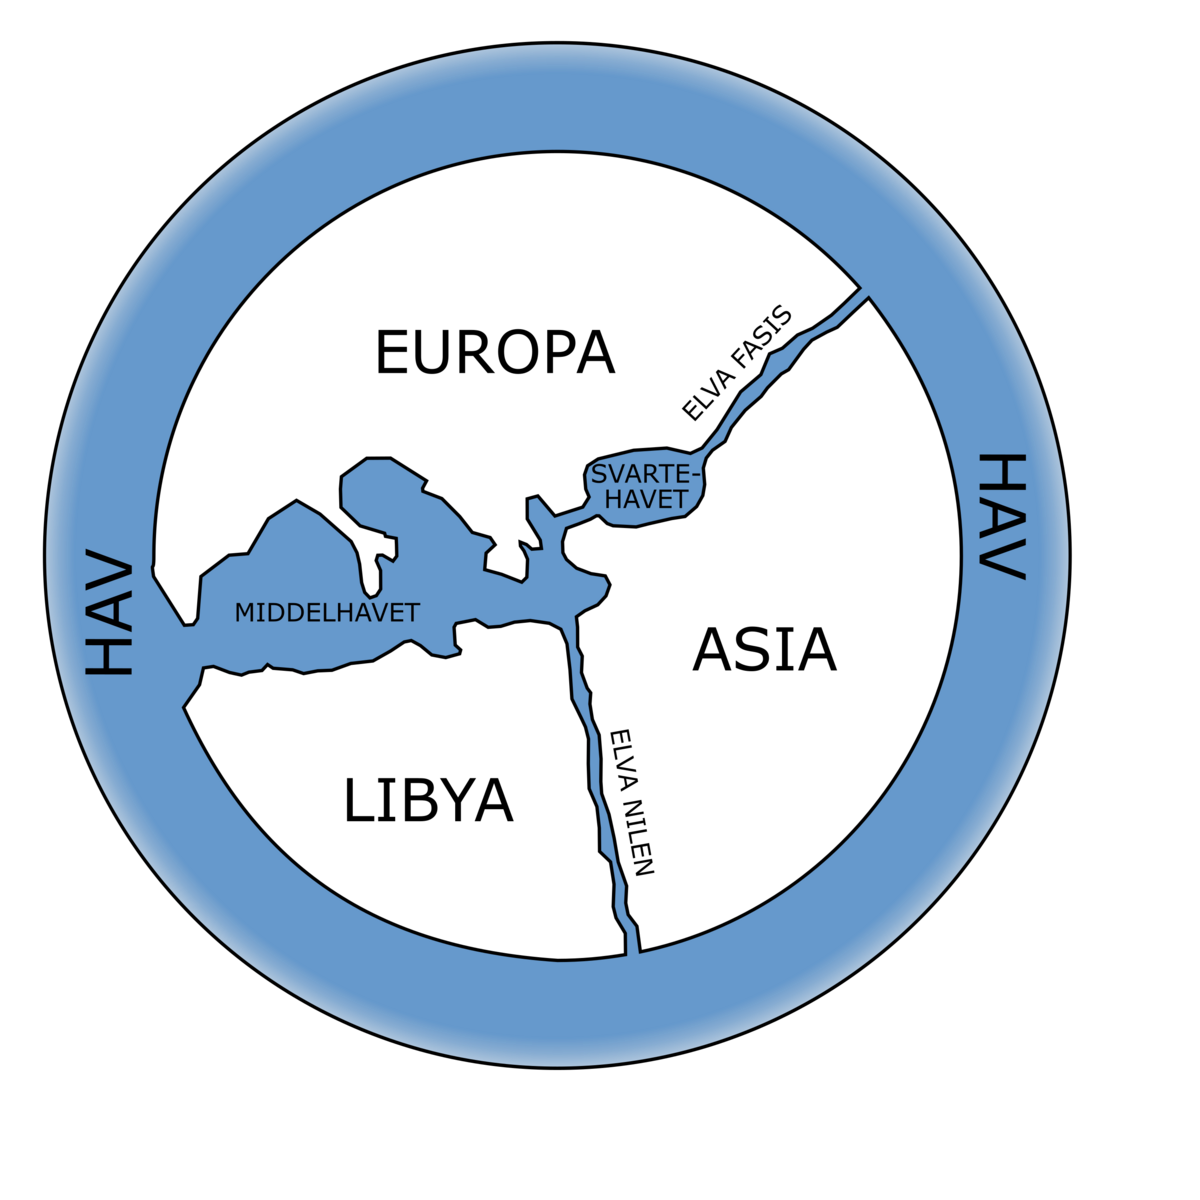 Antikke grekeres inndeling av verden i tre verdensdeler (Libya, Europa og Asia), her vist i geografen Anaximanders verdenskart.